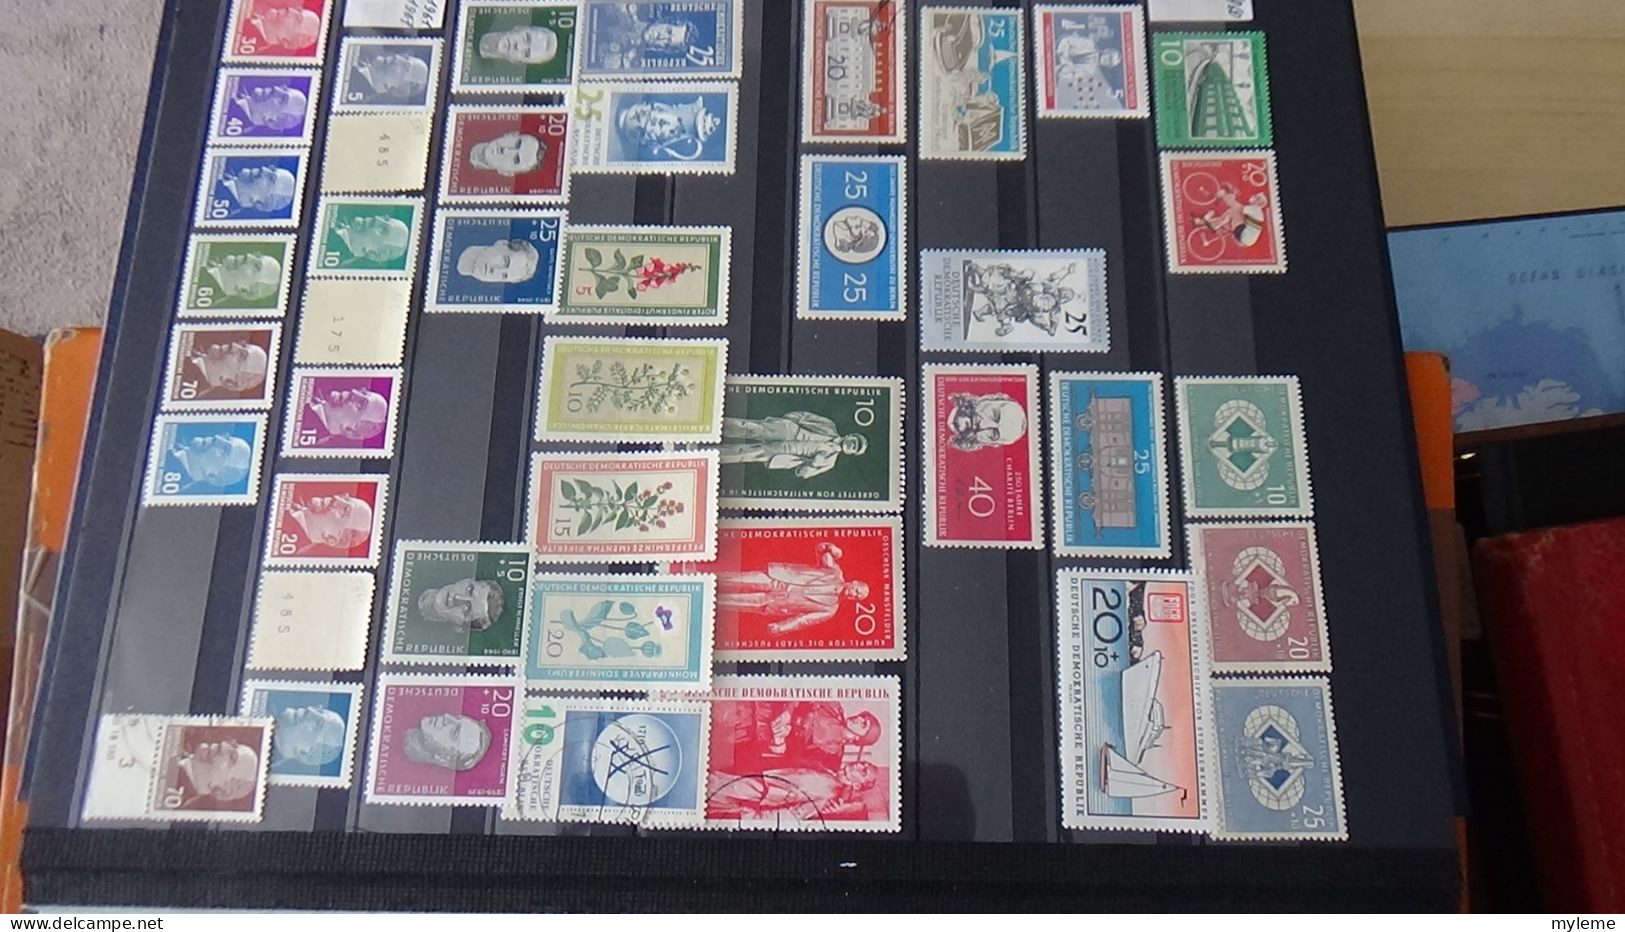 BF38 Ensemble de timbres de divers pays + France N° 262 **  Cote 550 euros